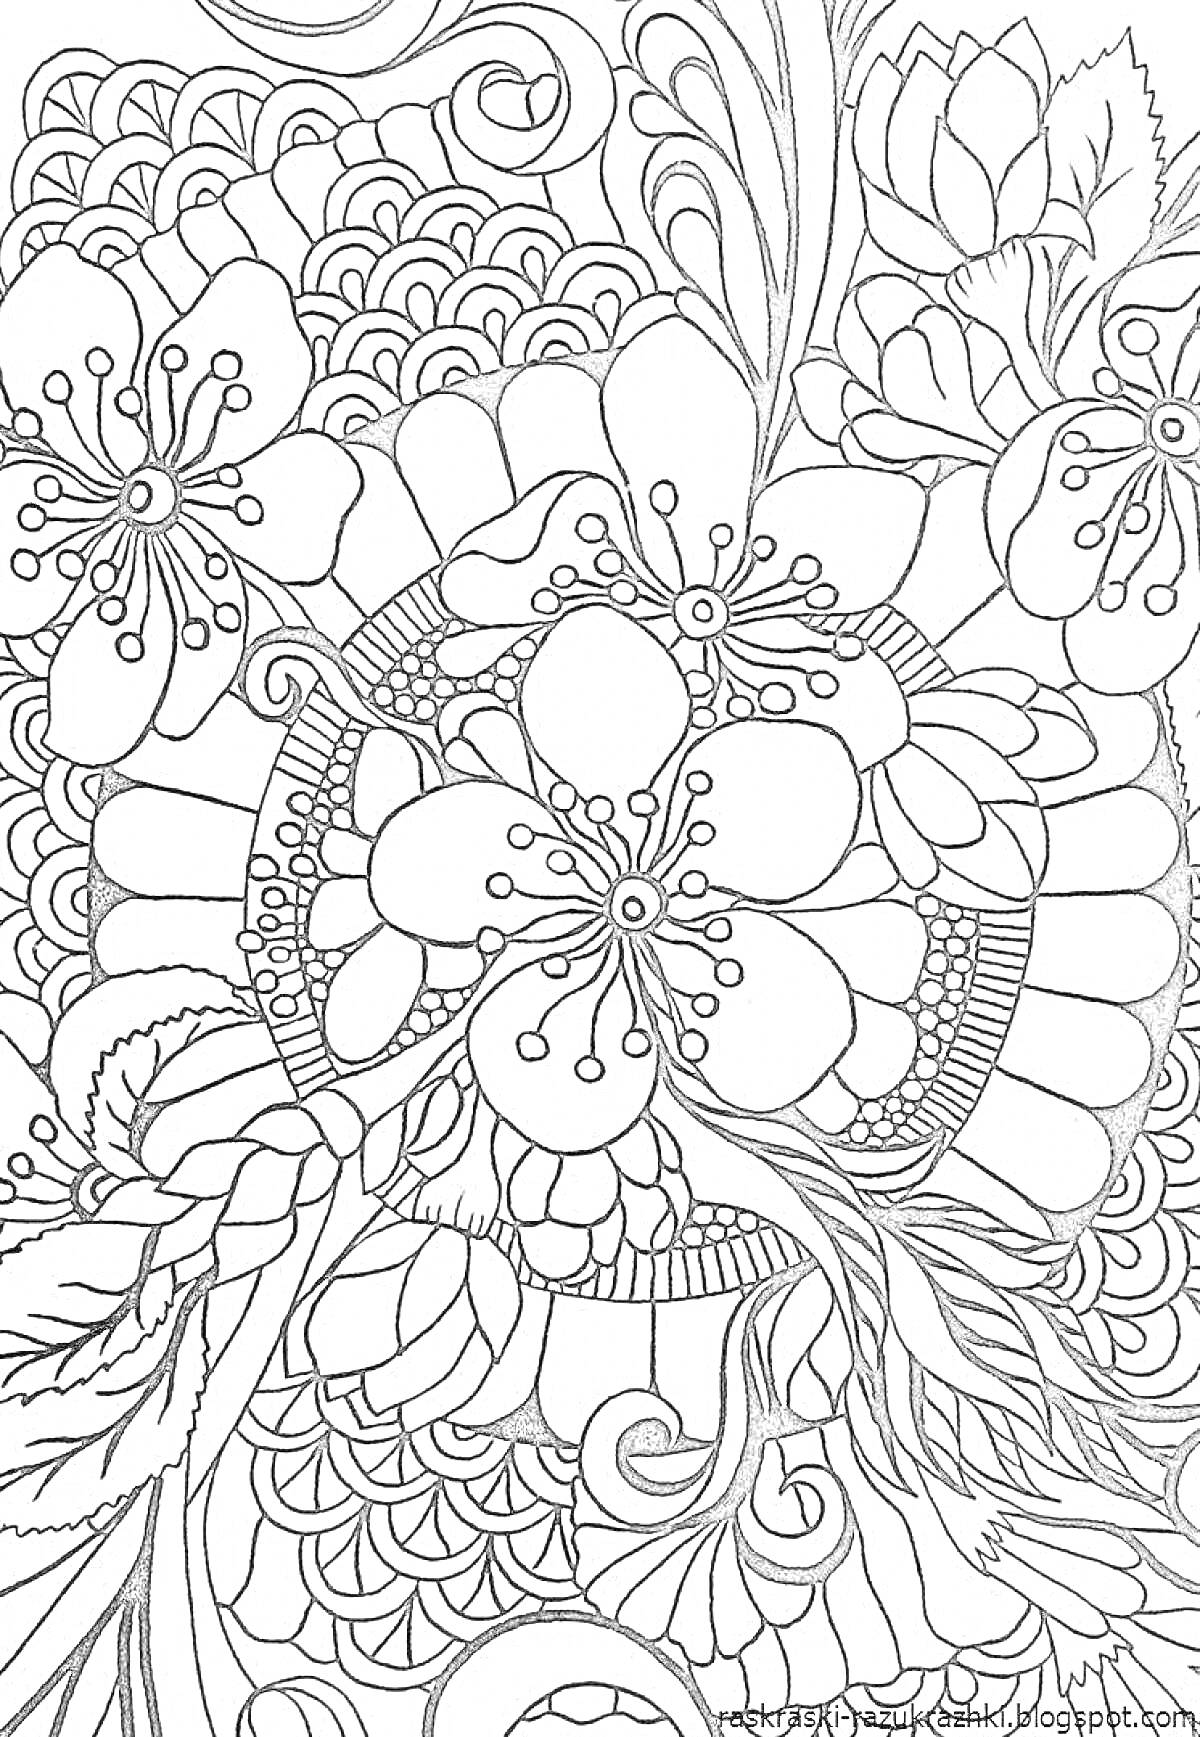 Раскраска Композиция с цветами и листьями, включающая крупные центральные цветы, лепестки, узоры в виде волн и завитков, а также мелкие декоративные элементы